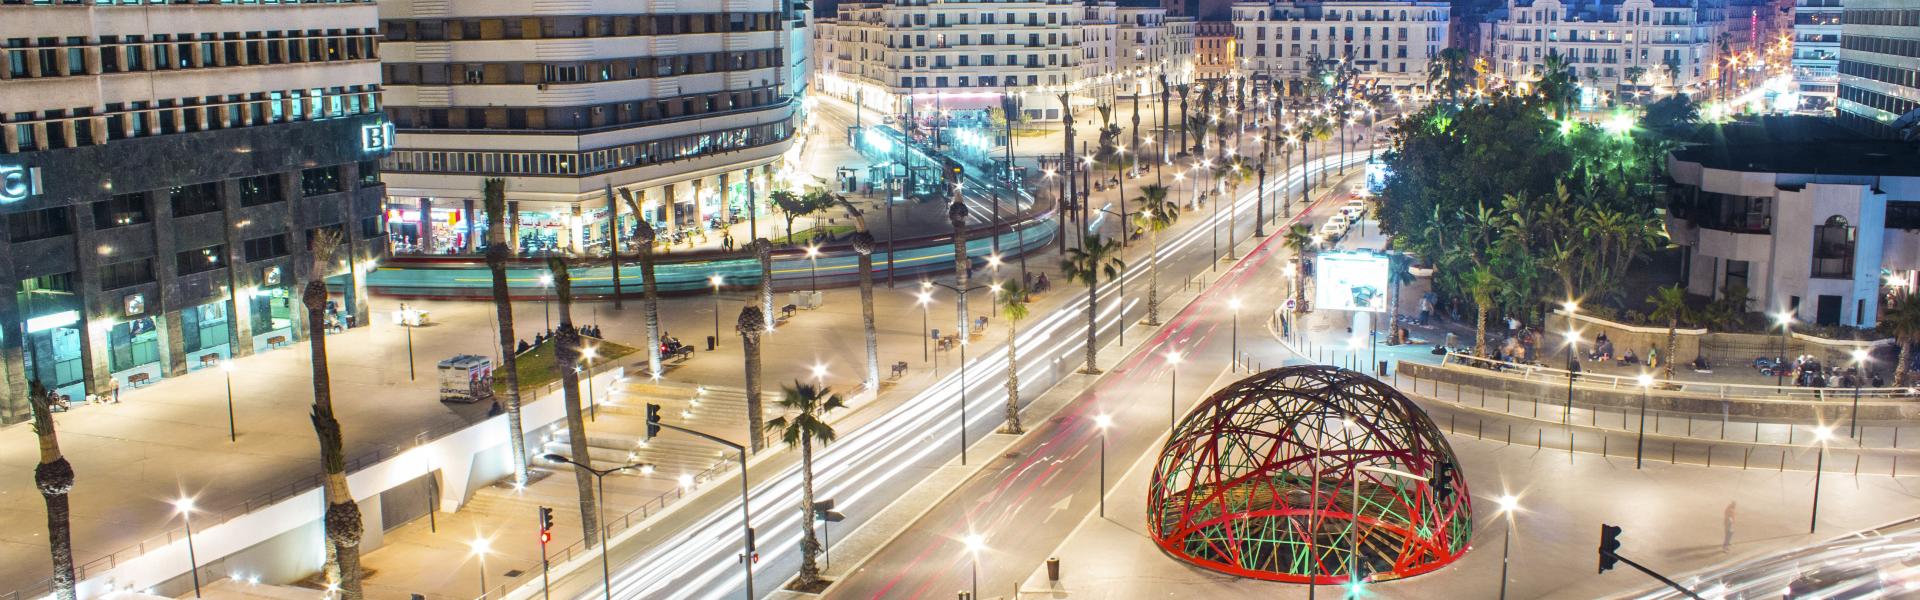 VISEO Casablanca: de nouveaux locaux pour accompagner notre développement